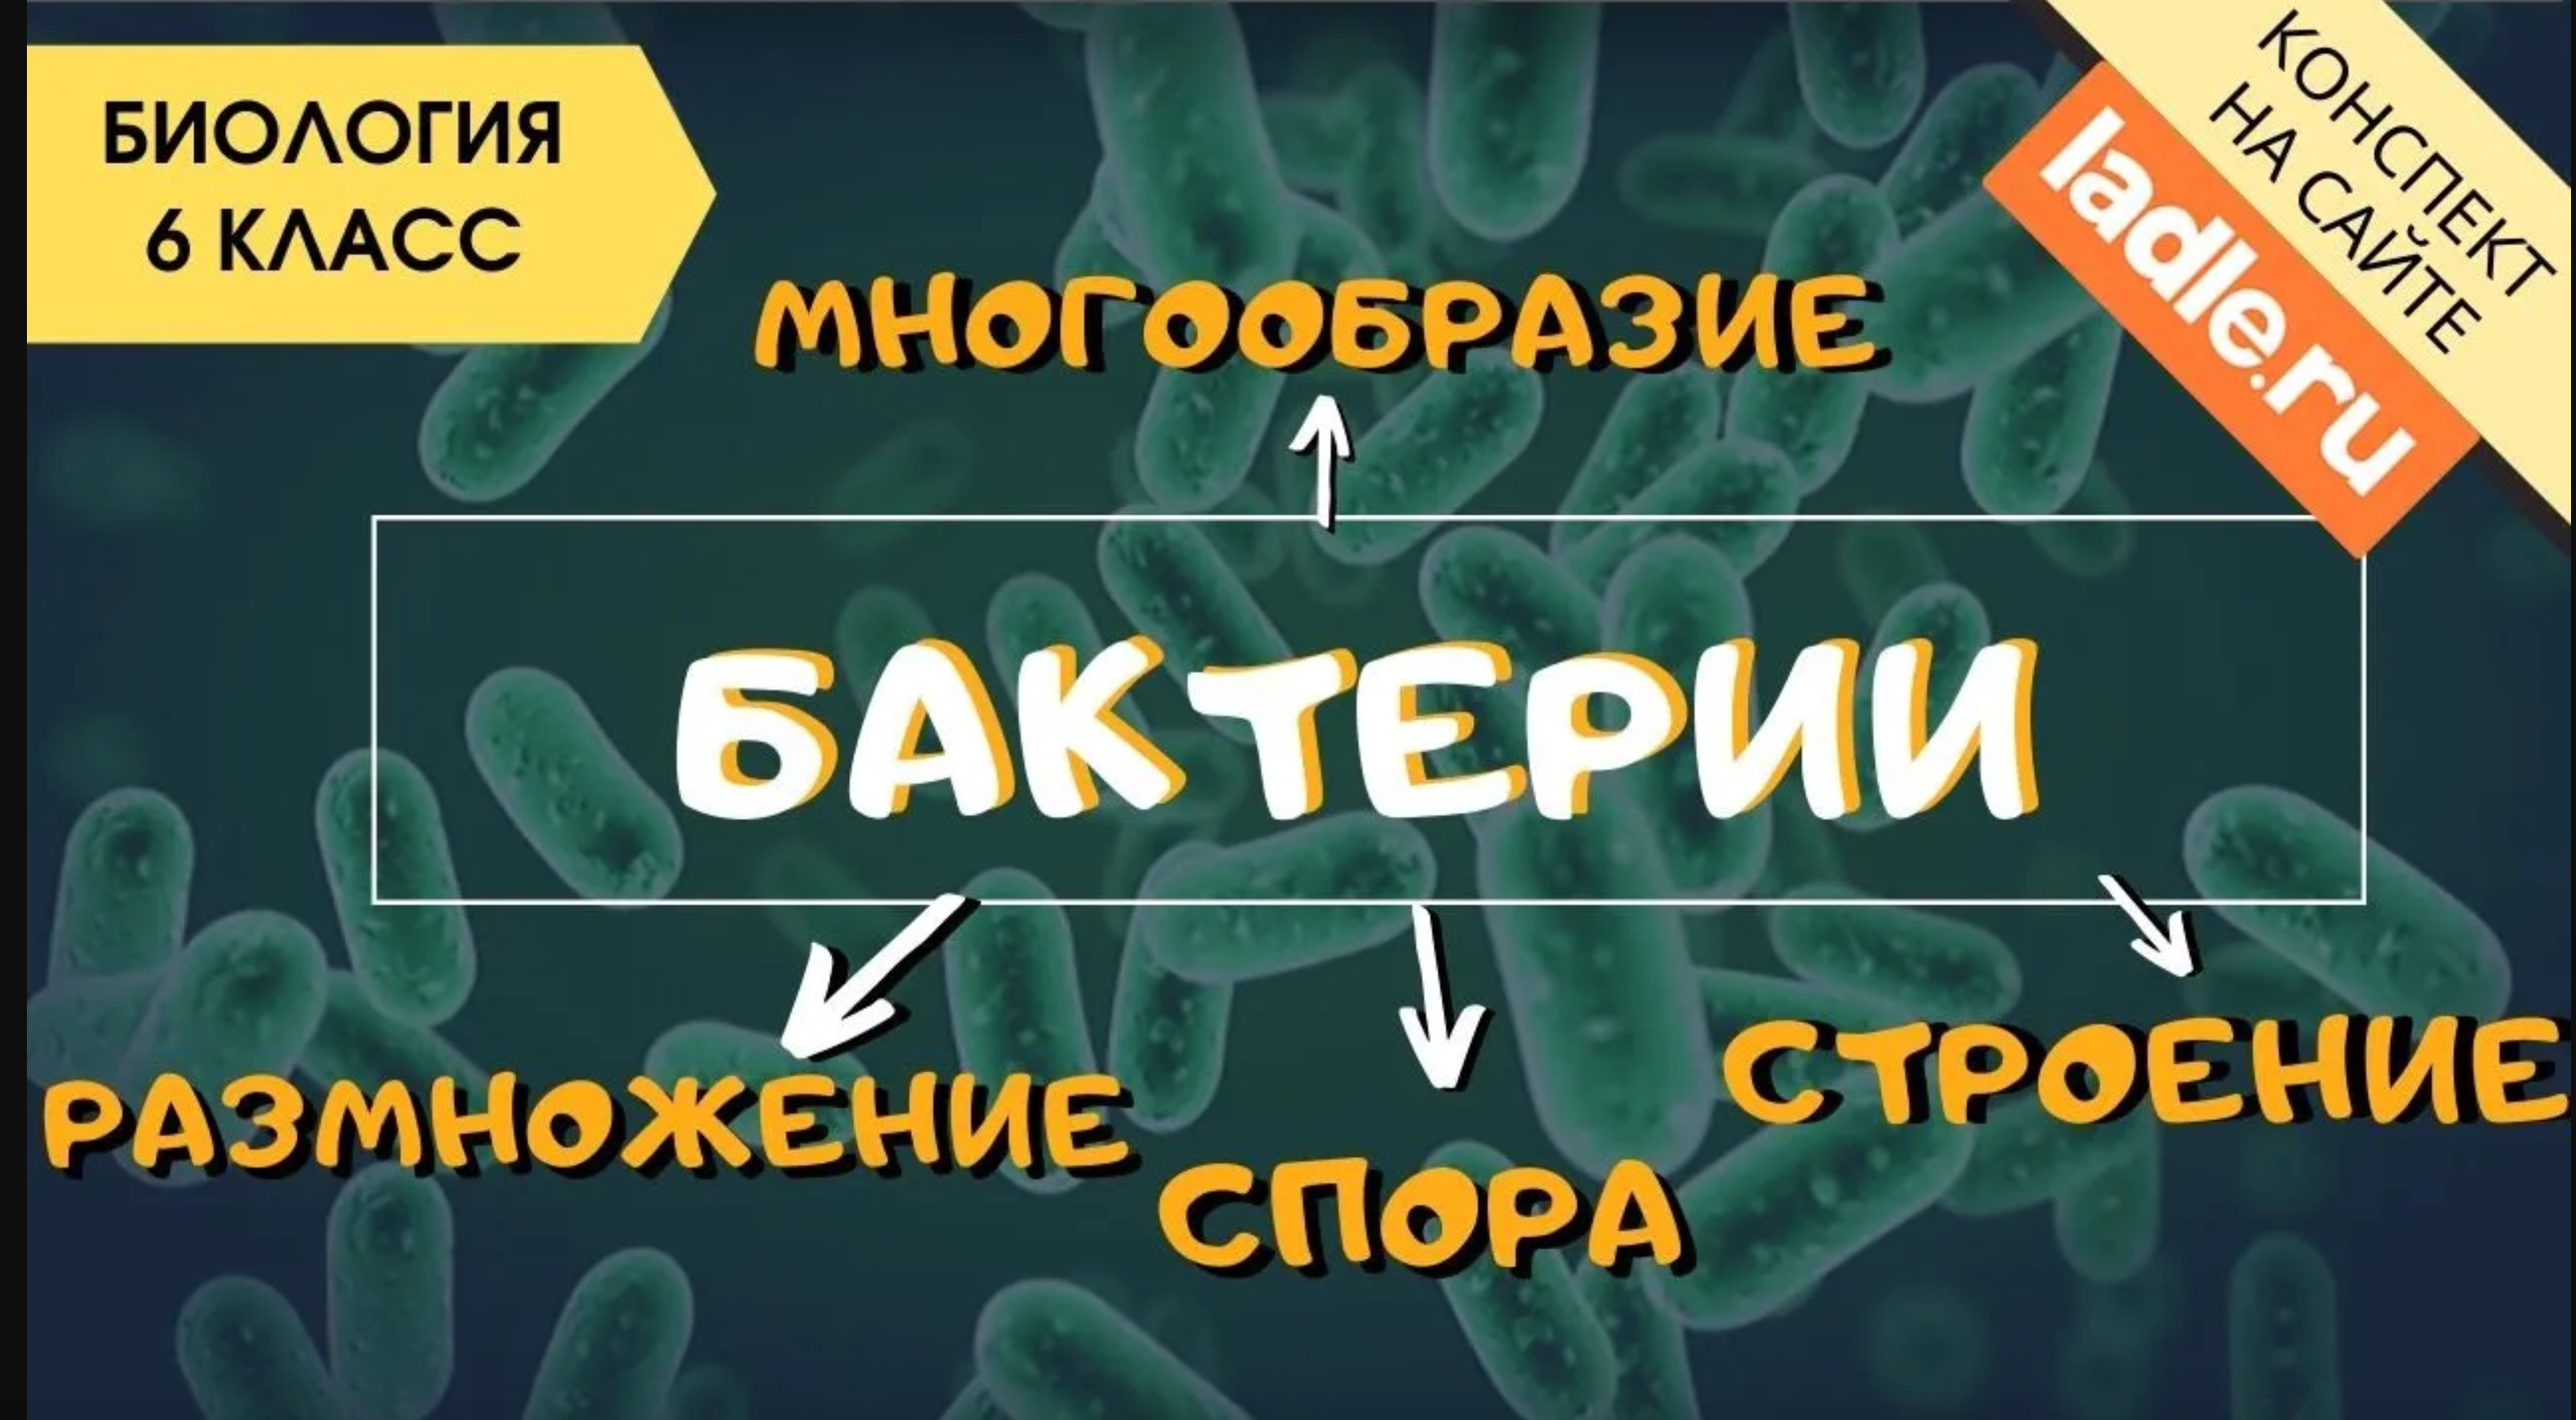 Бактерии. Биология 6 класс. Размножение, строение и жизнедеятельность бактерий